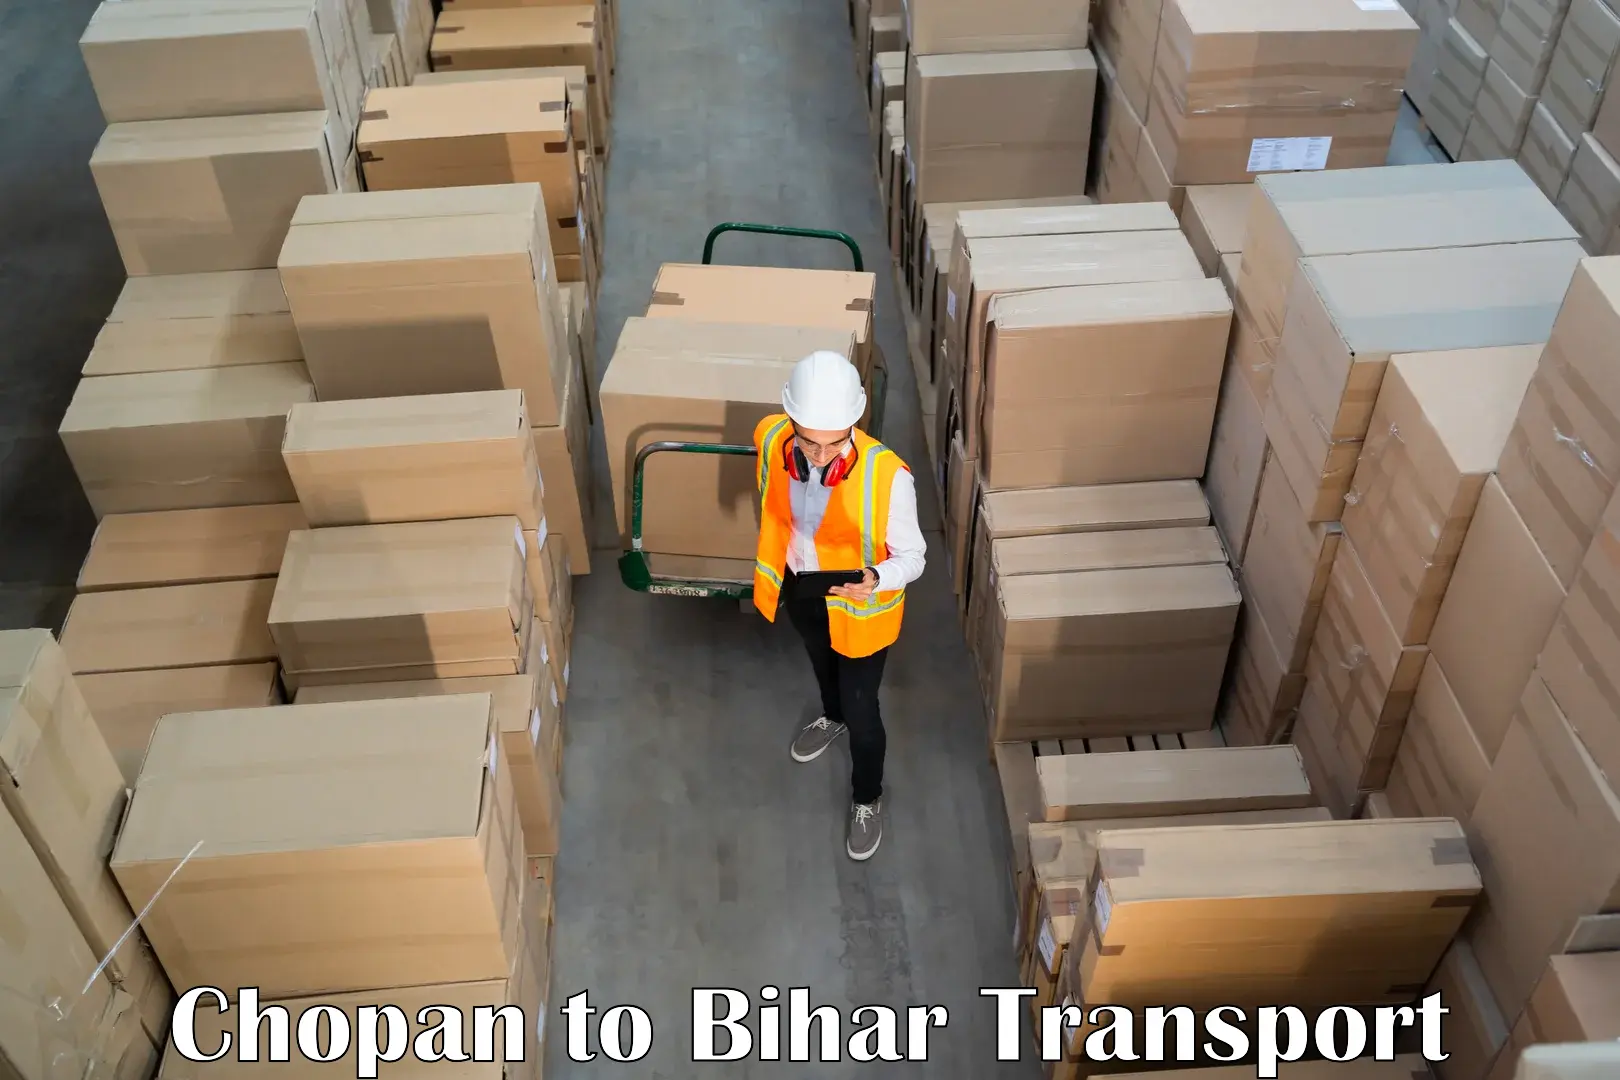 Shipping partner Chopan to Sharfuddinpur